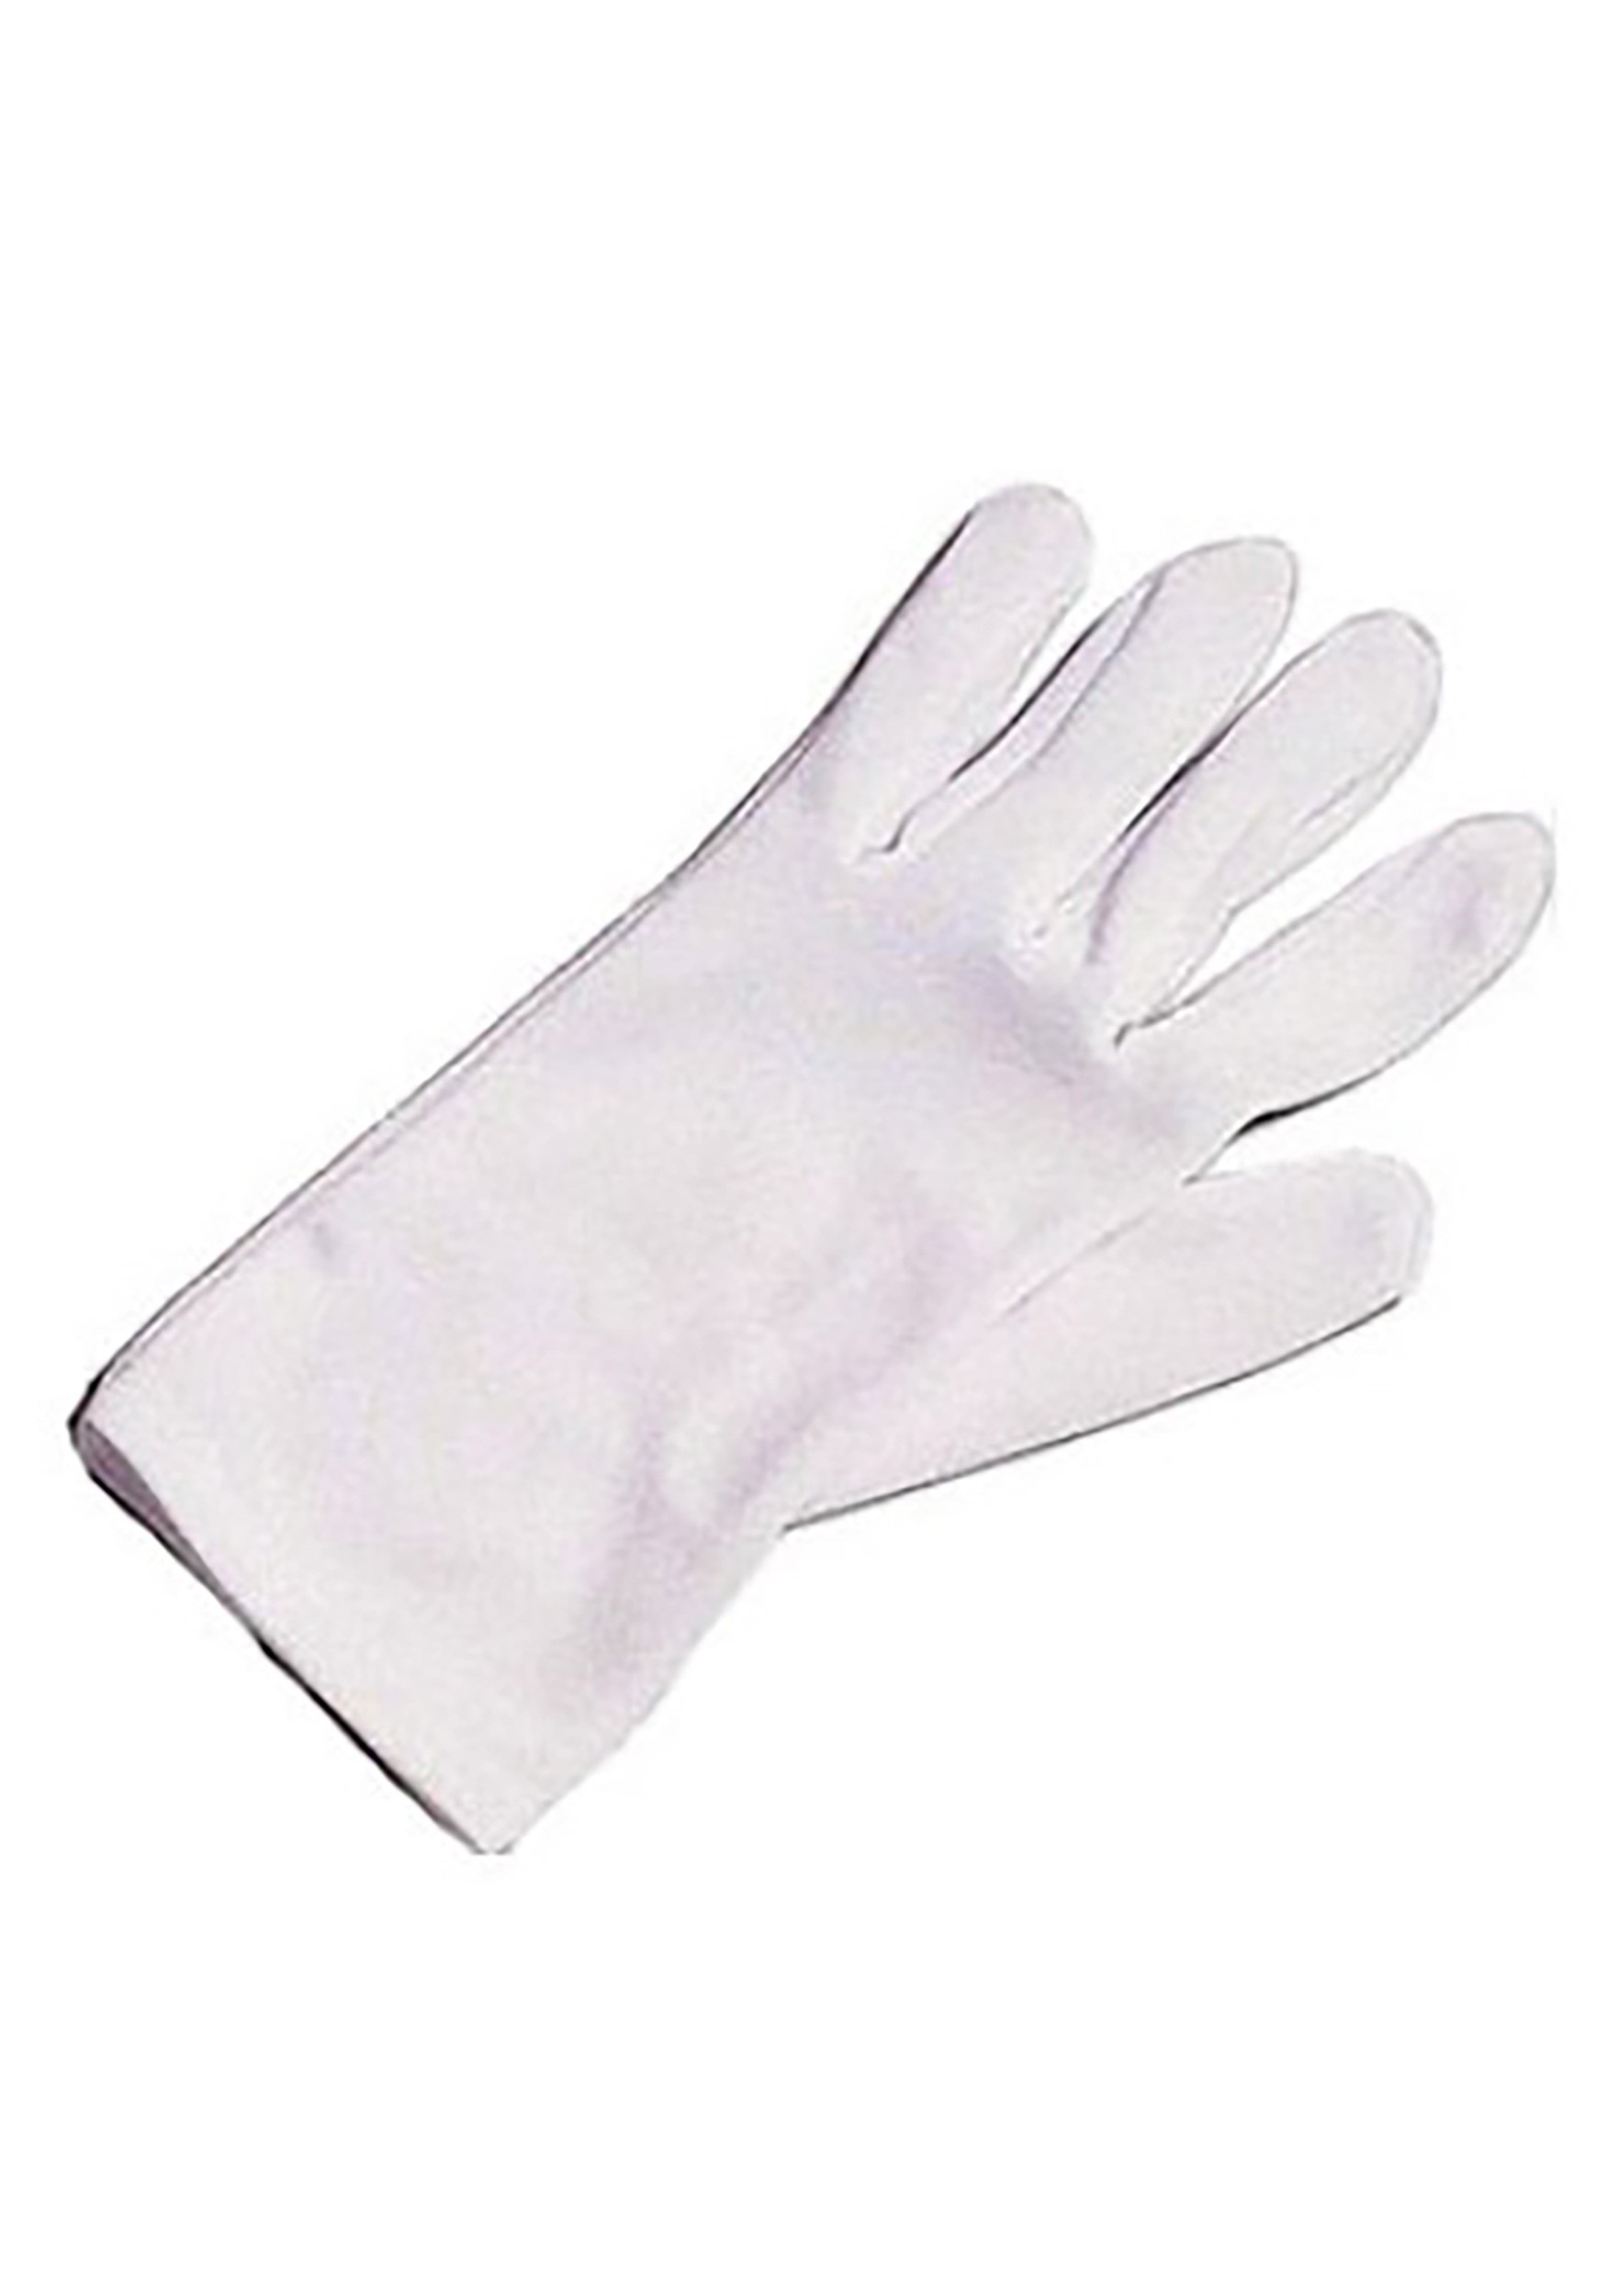 White Costume Gloves For Kids